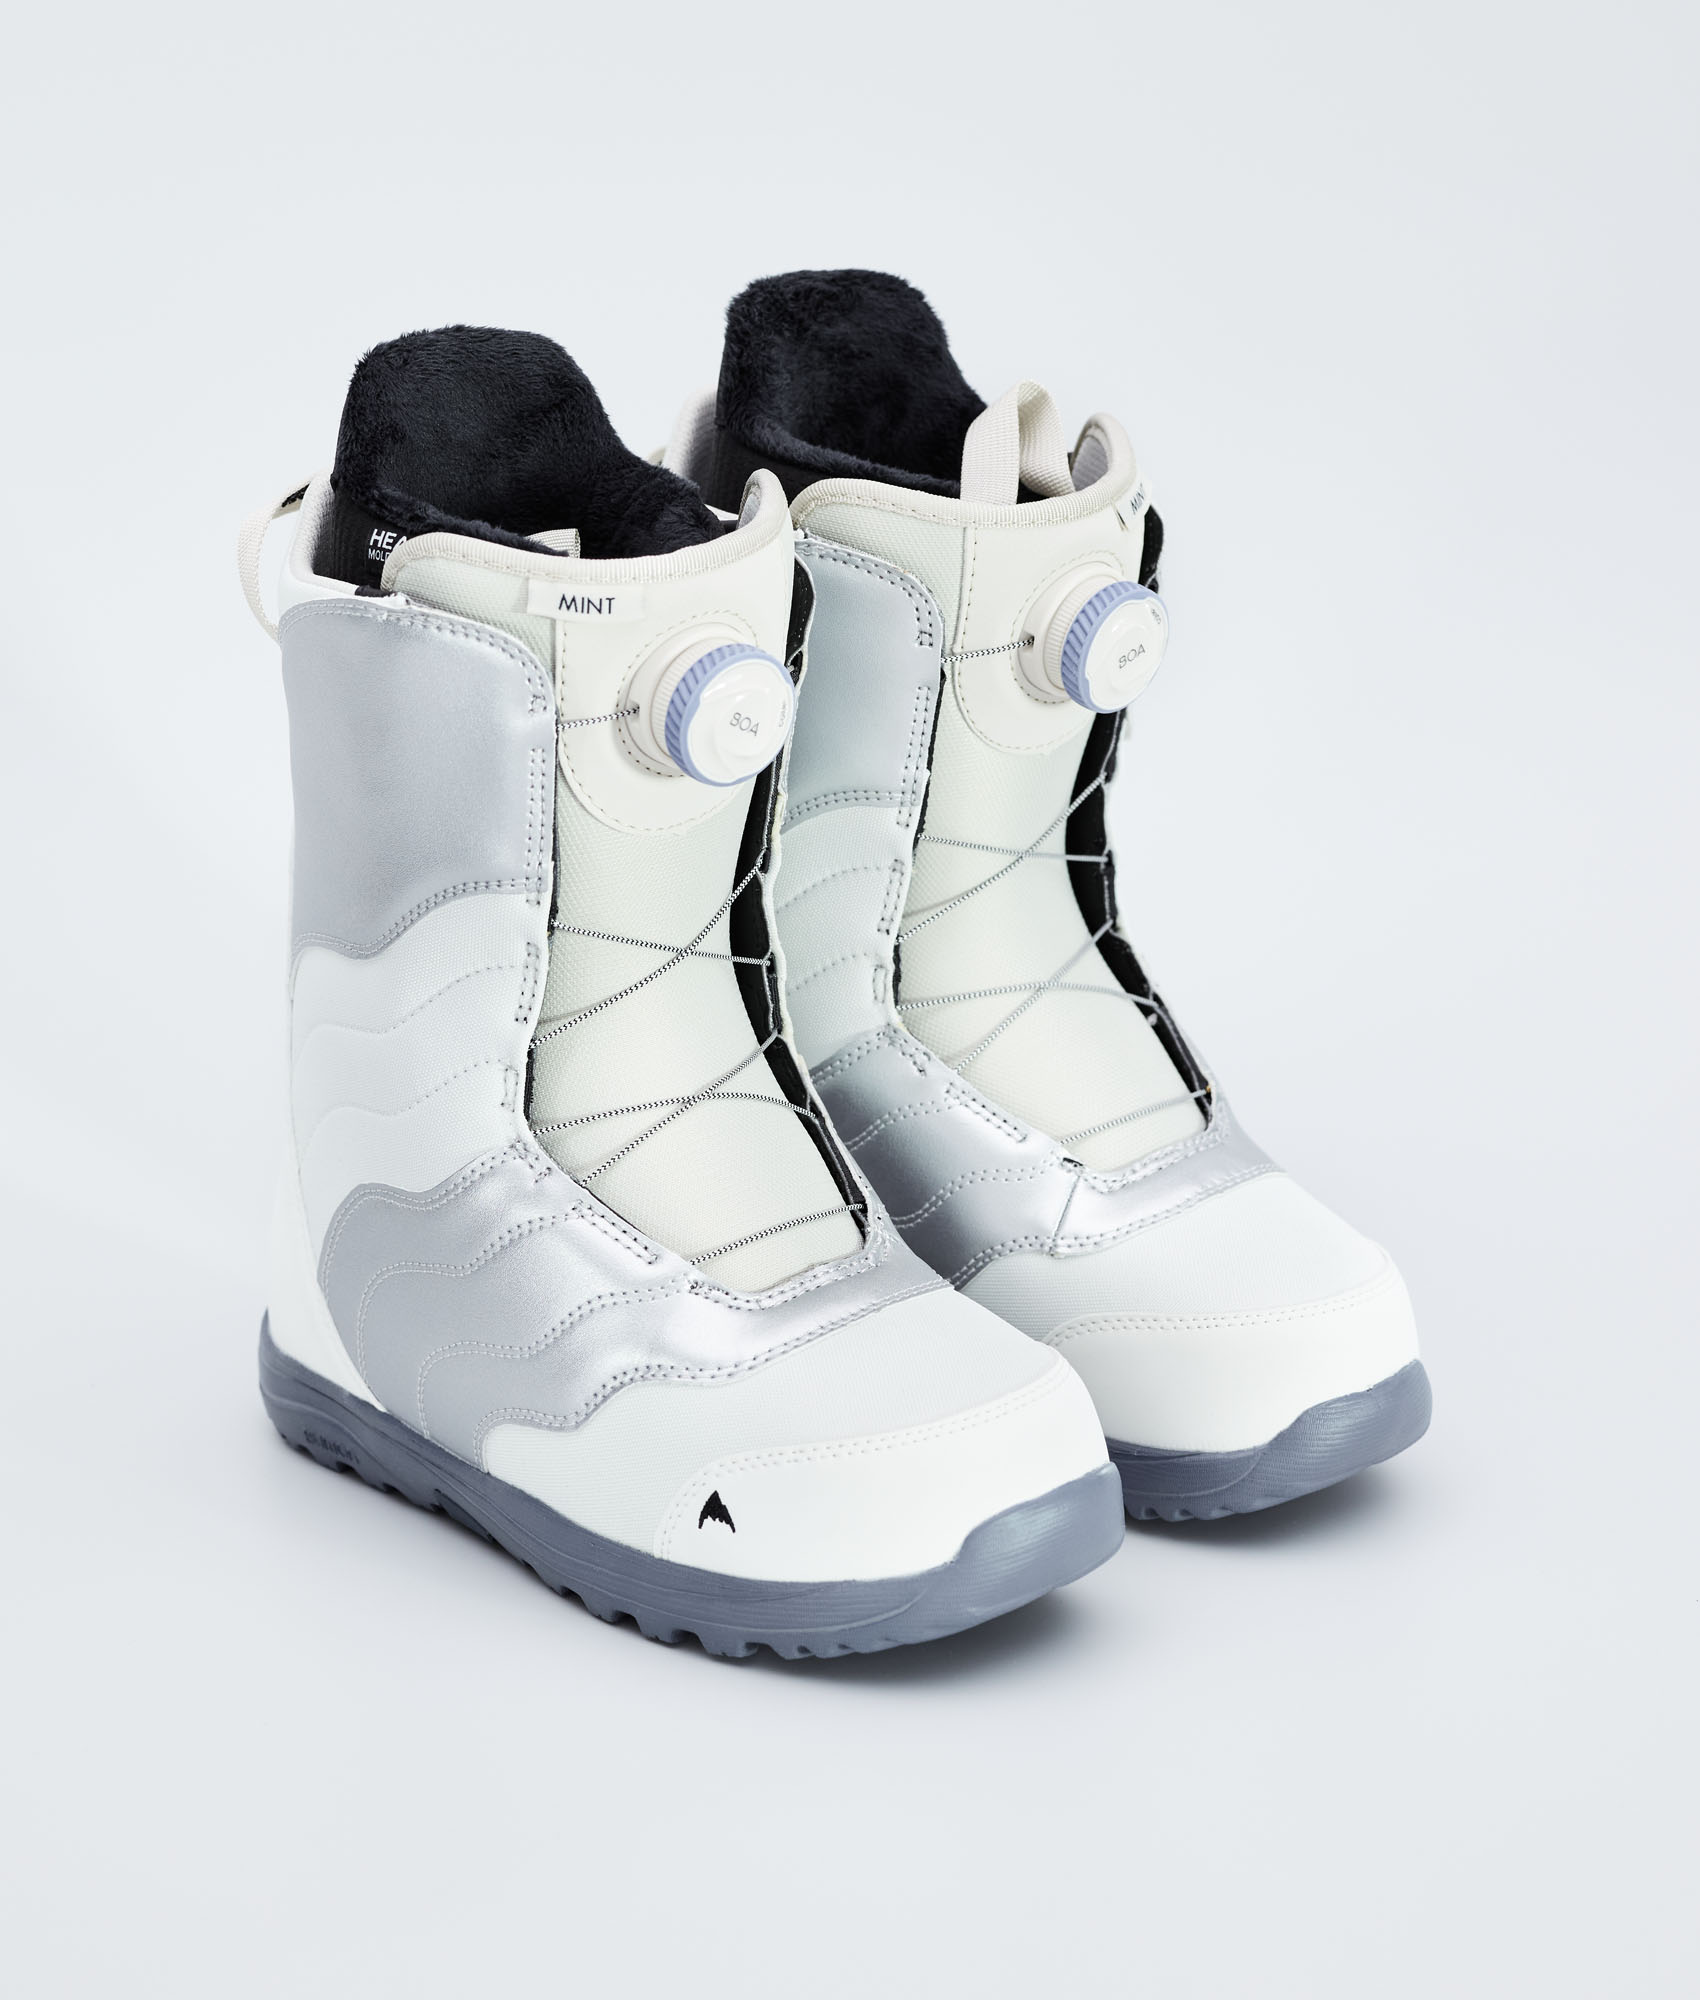 Brand New Womens 2022 Burton Mint BOA Snowboard Boots Stout White/ Glitter 